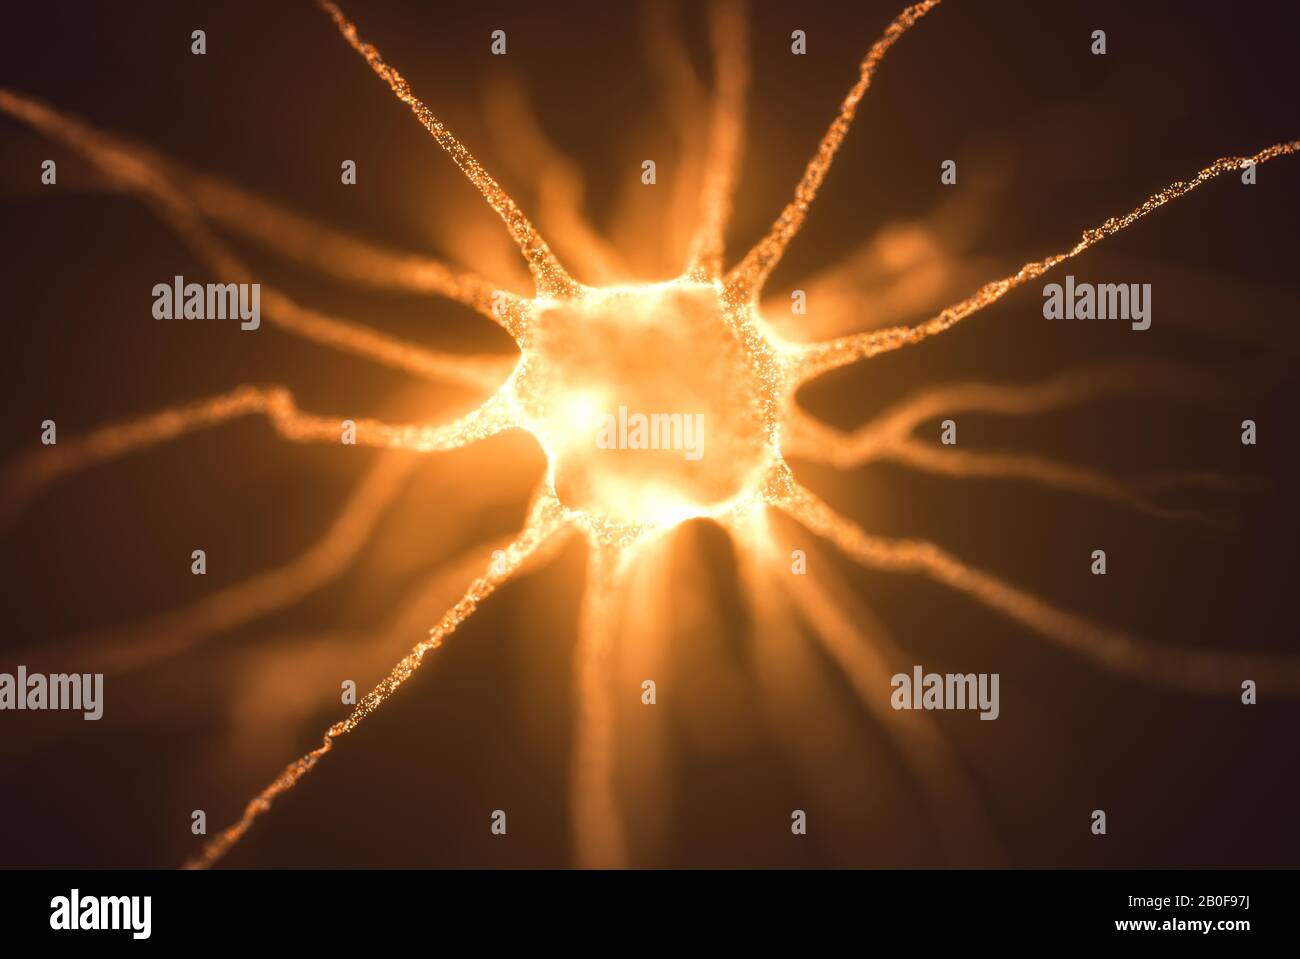 Imagen conceptual de una neurona energizada con carga eléctrica. Concepto de ciencia e investigación del cerebro humano, ilustración en 3D. Foto de stock